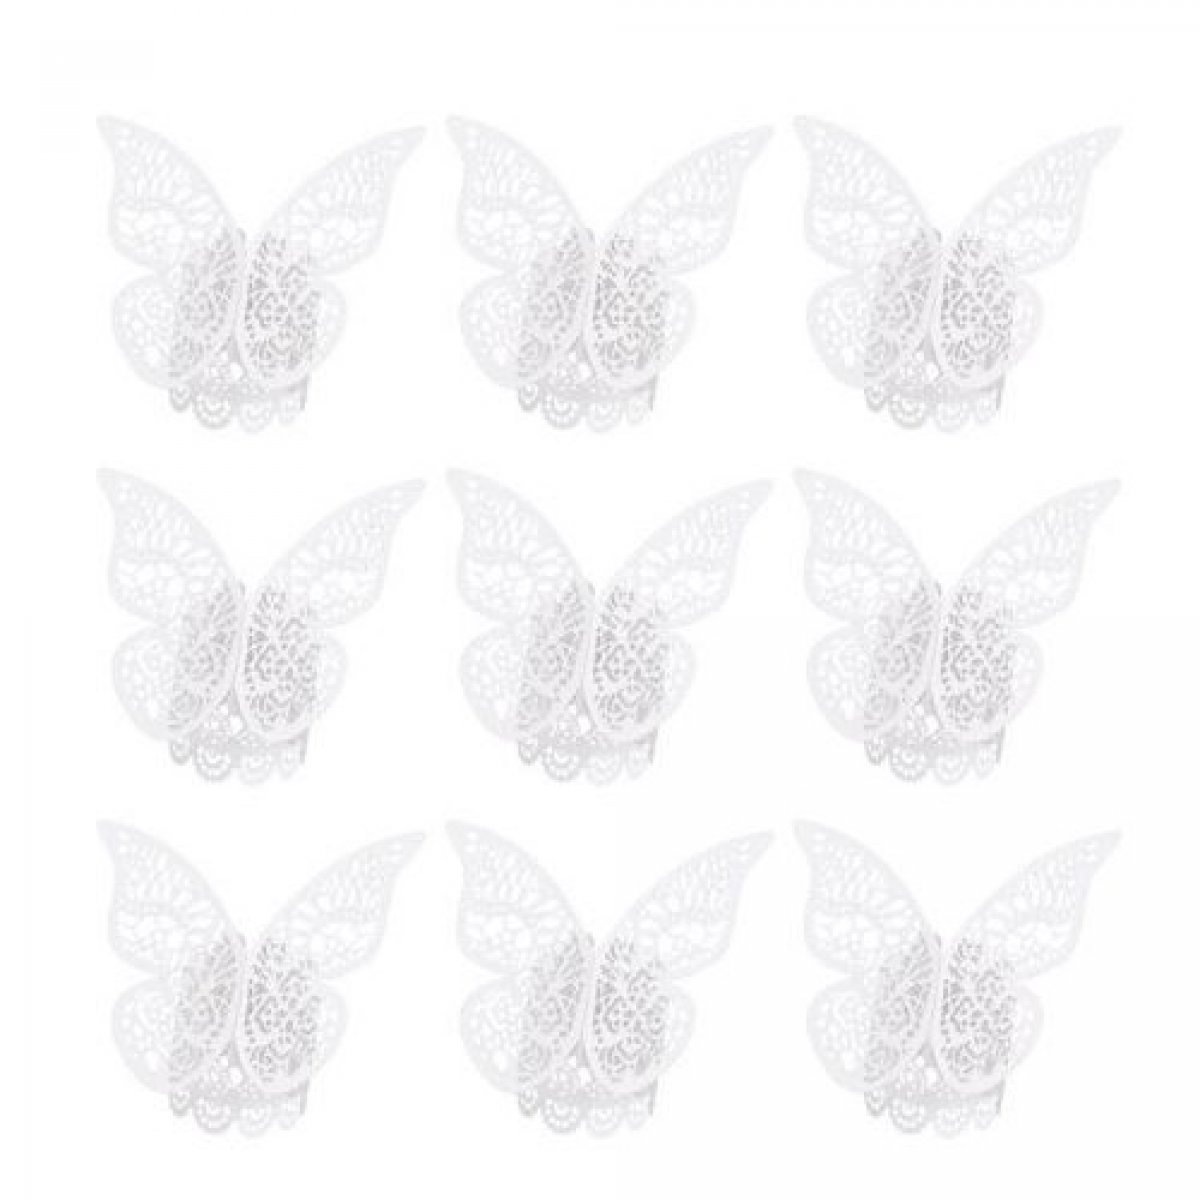 Ronds de serviette papillon blanc / crème x 10 pièces